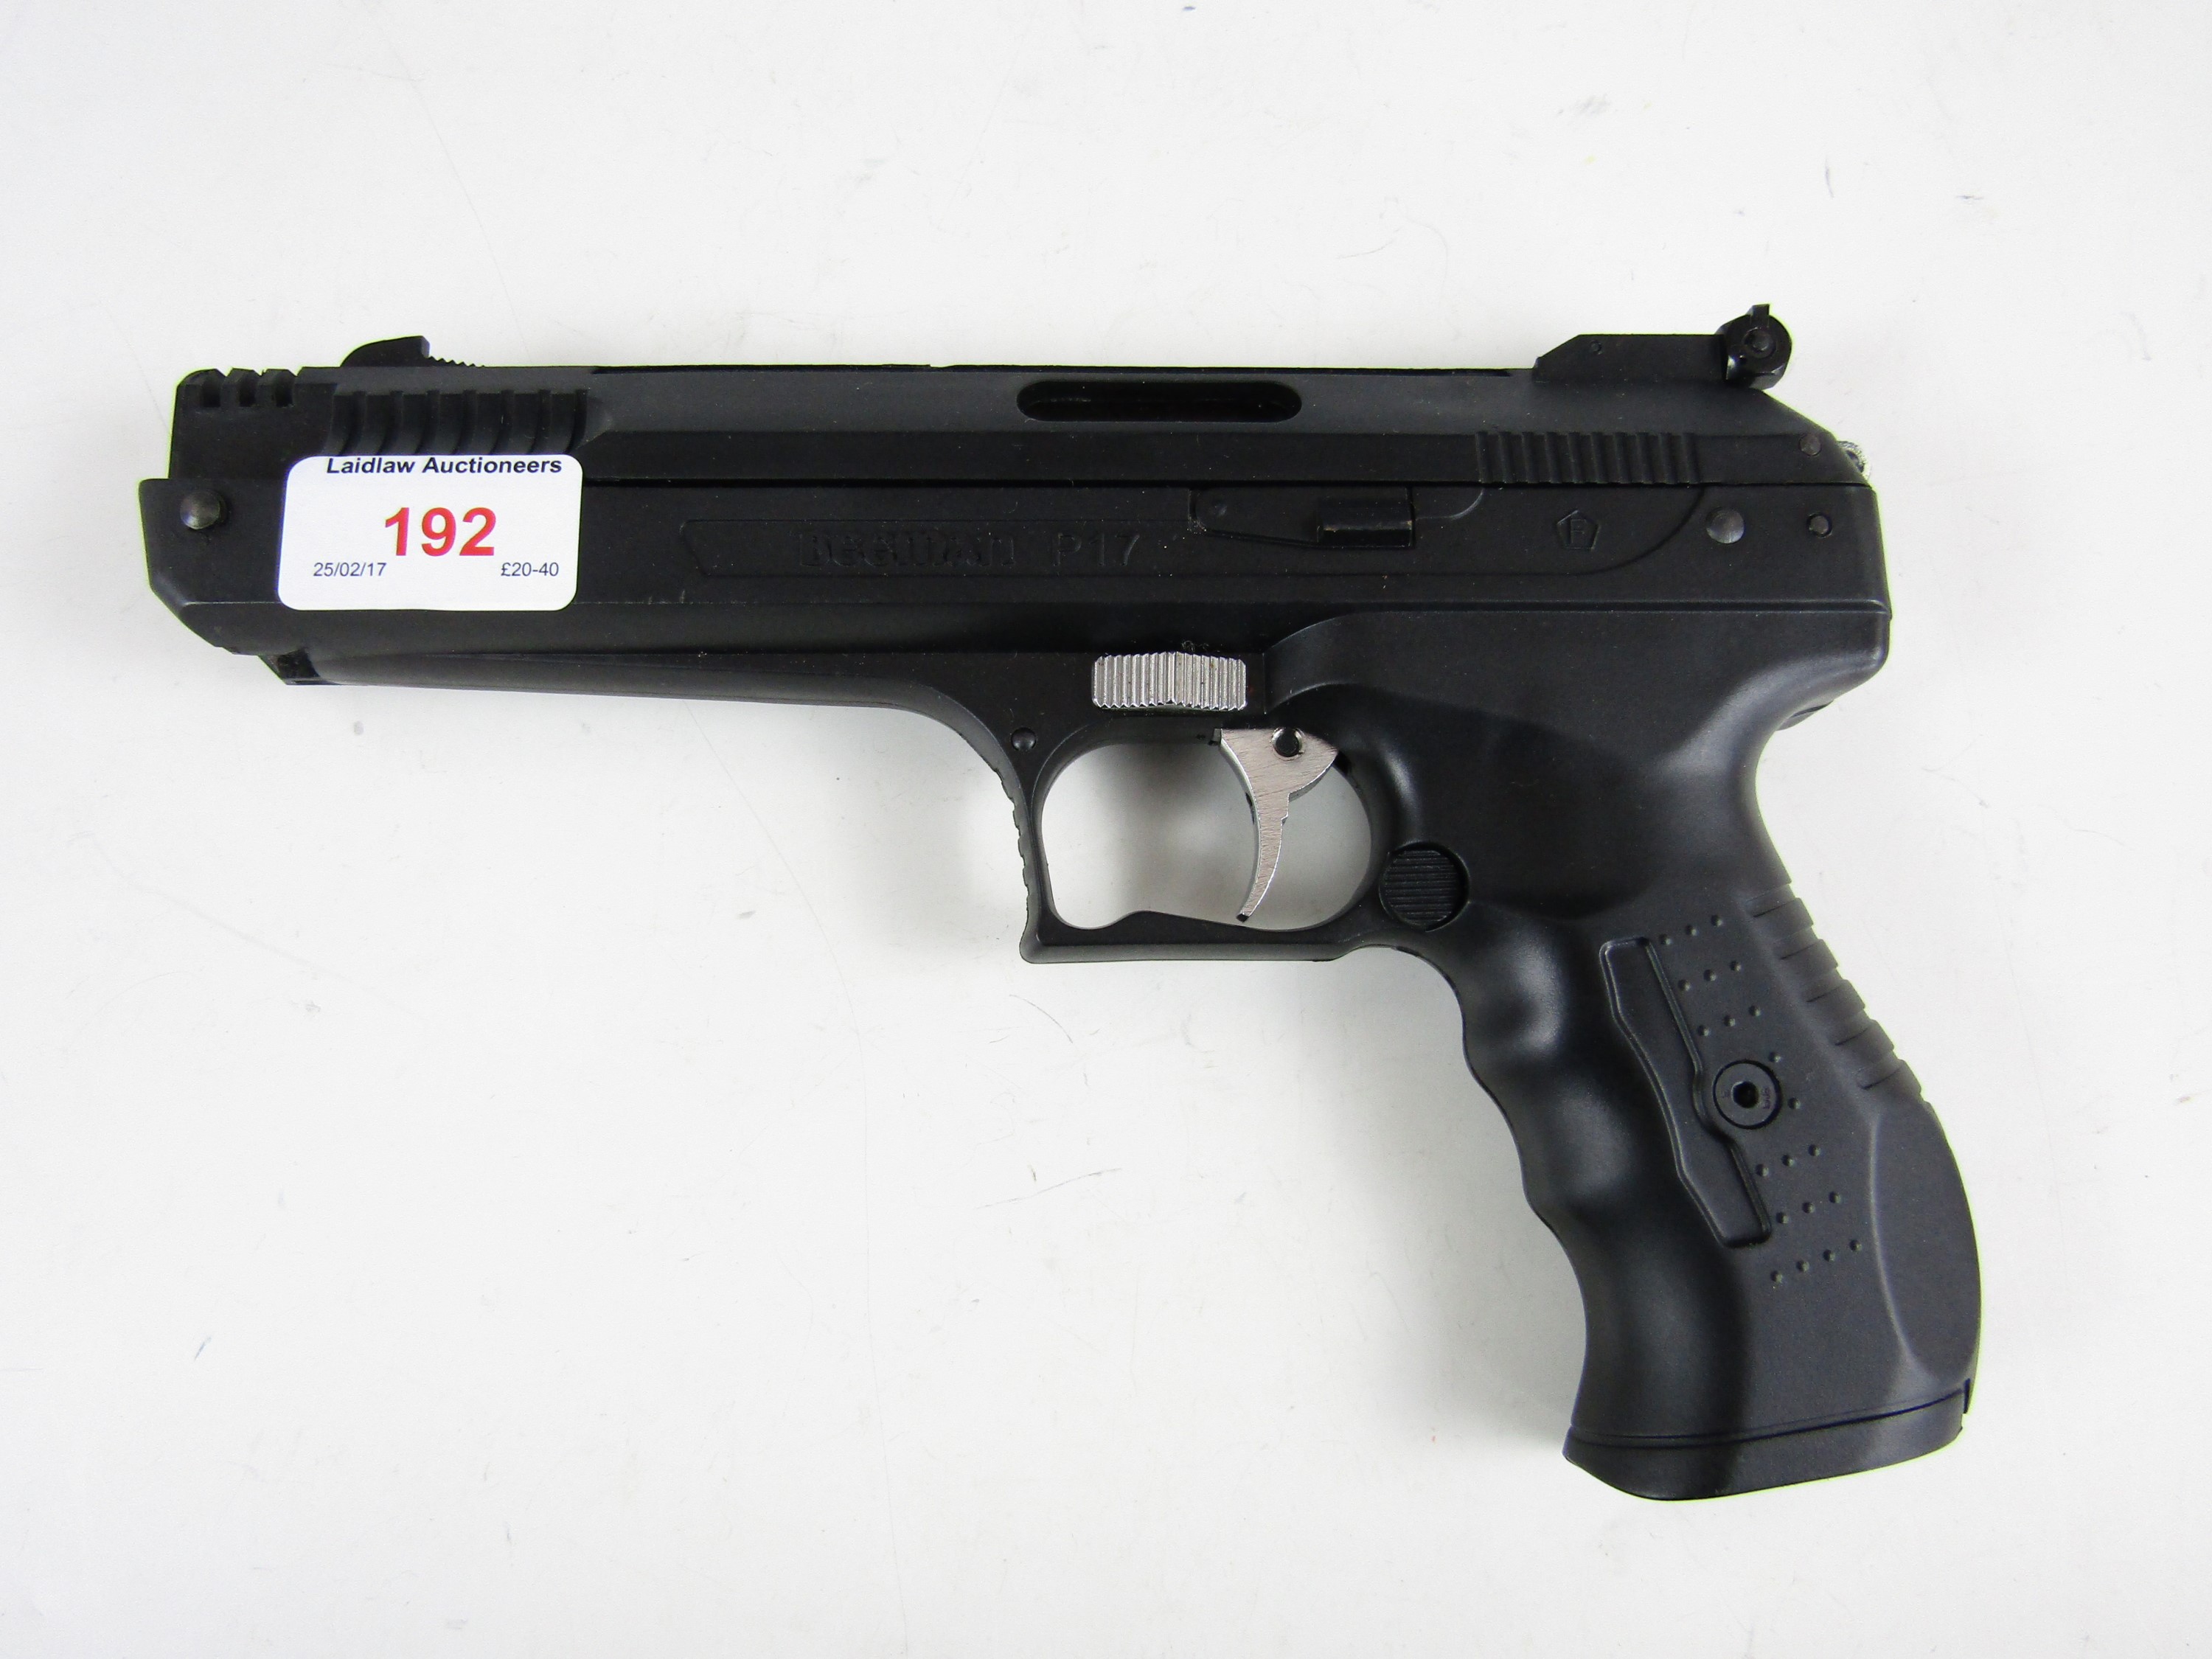 A Beeman P17 .22 calibre air pistol